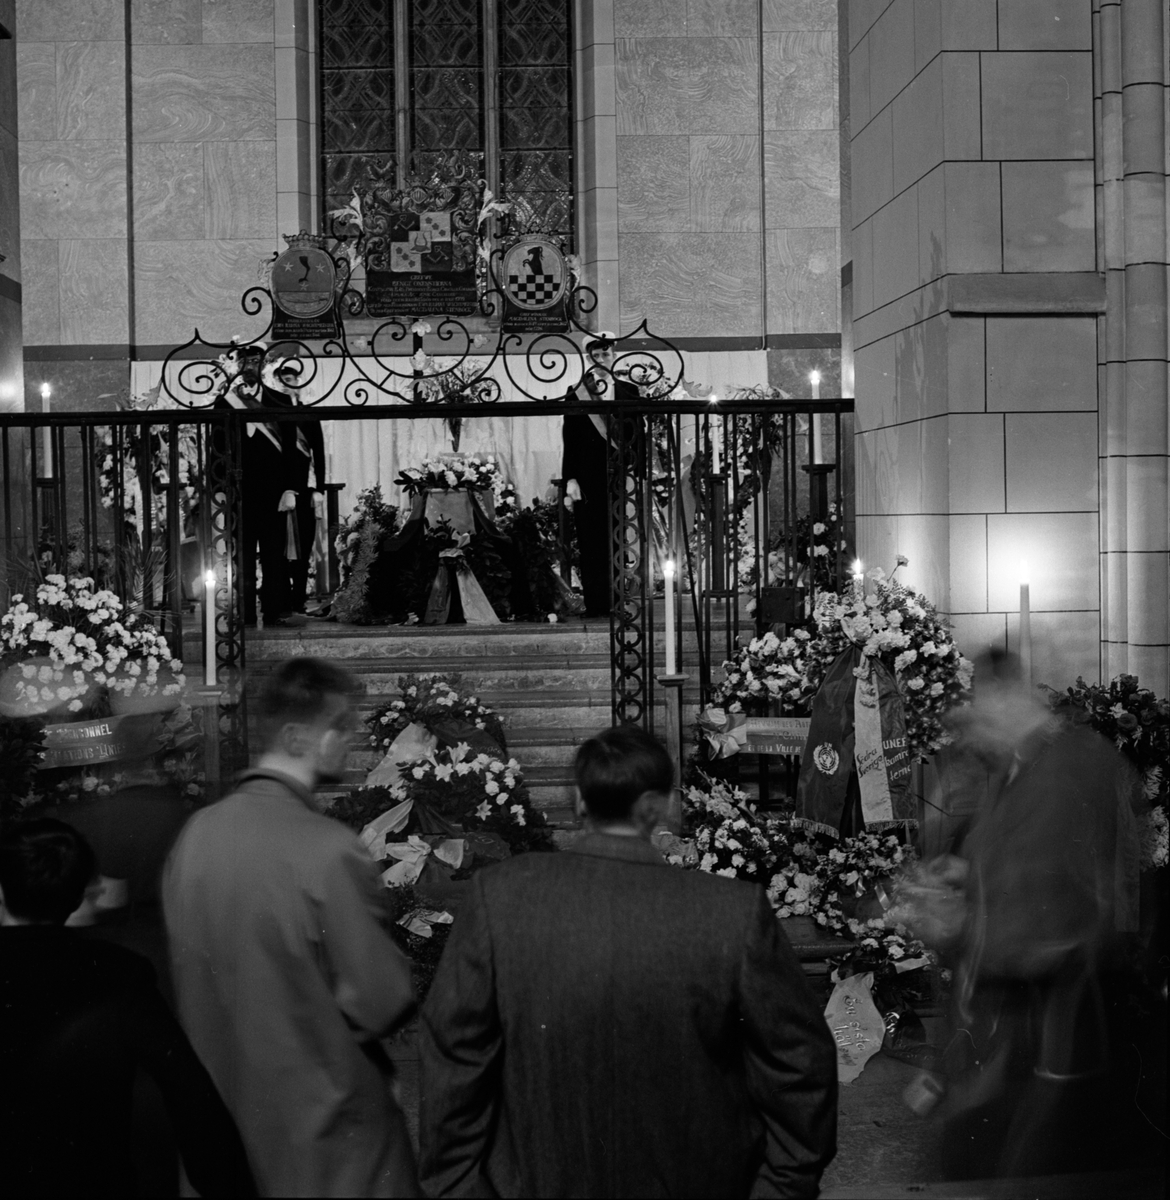 Dag Hammarskjölds begravning, defileringen i kyrkan dagen för begravningen, Uppsala domkyrka september 1961